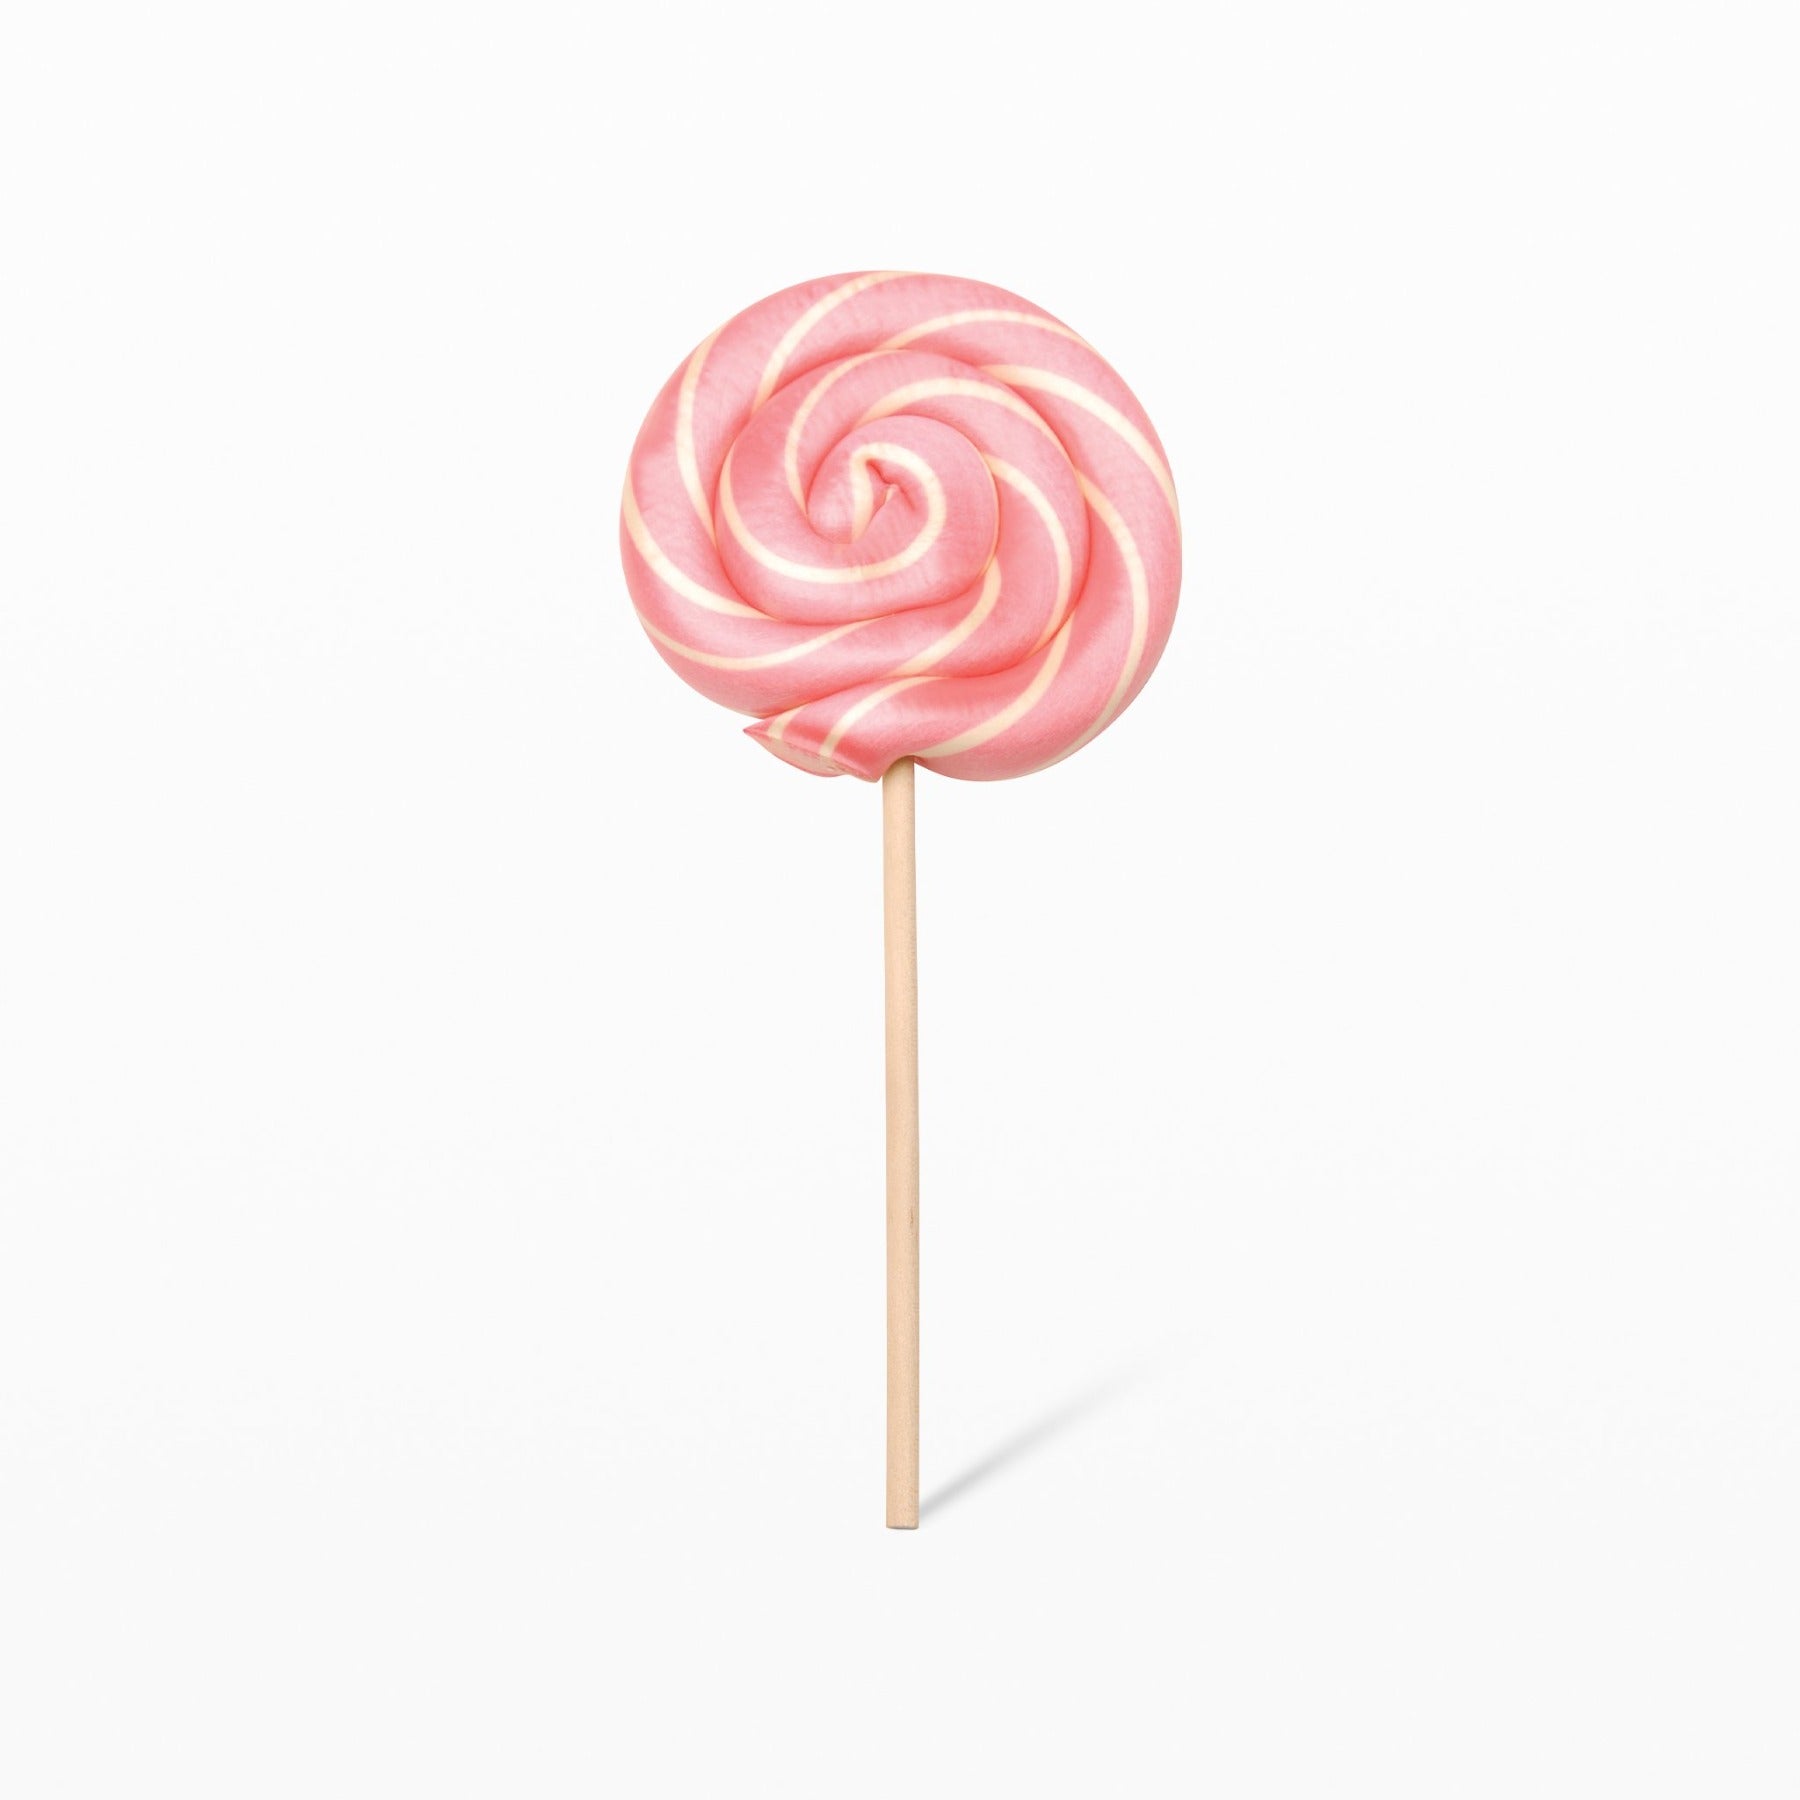 What is Lollipop?